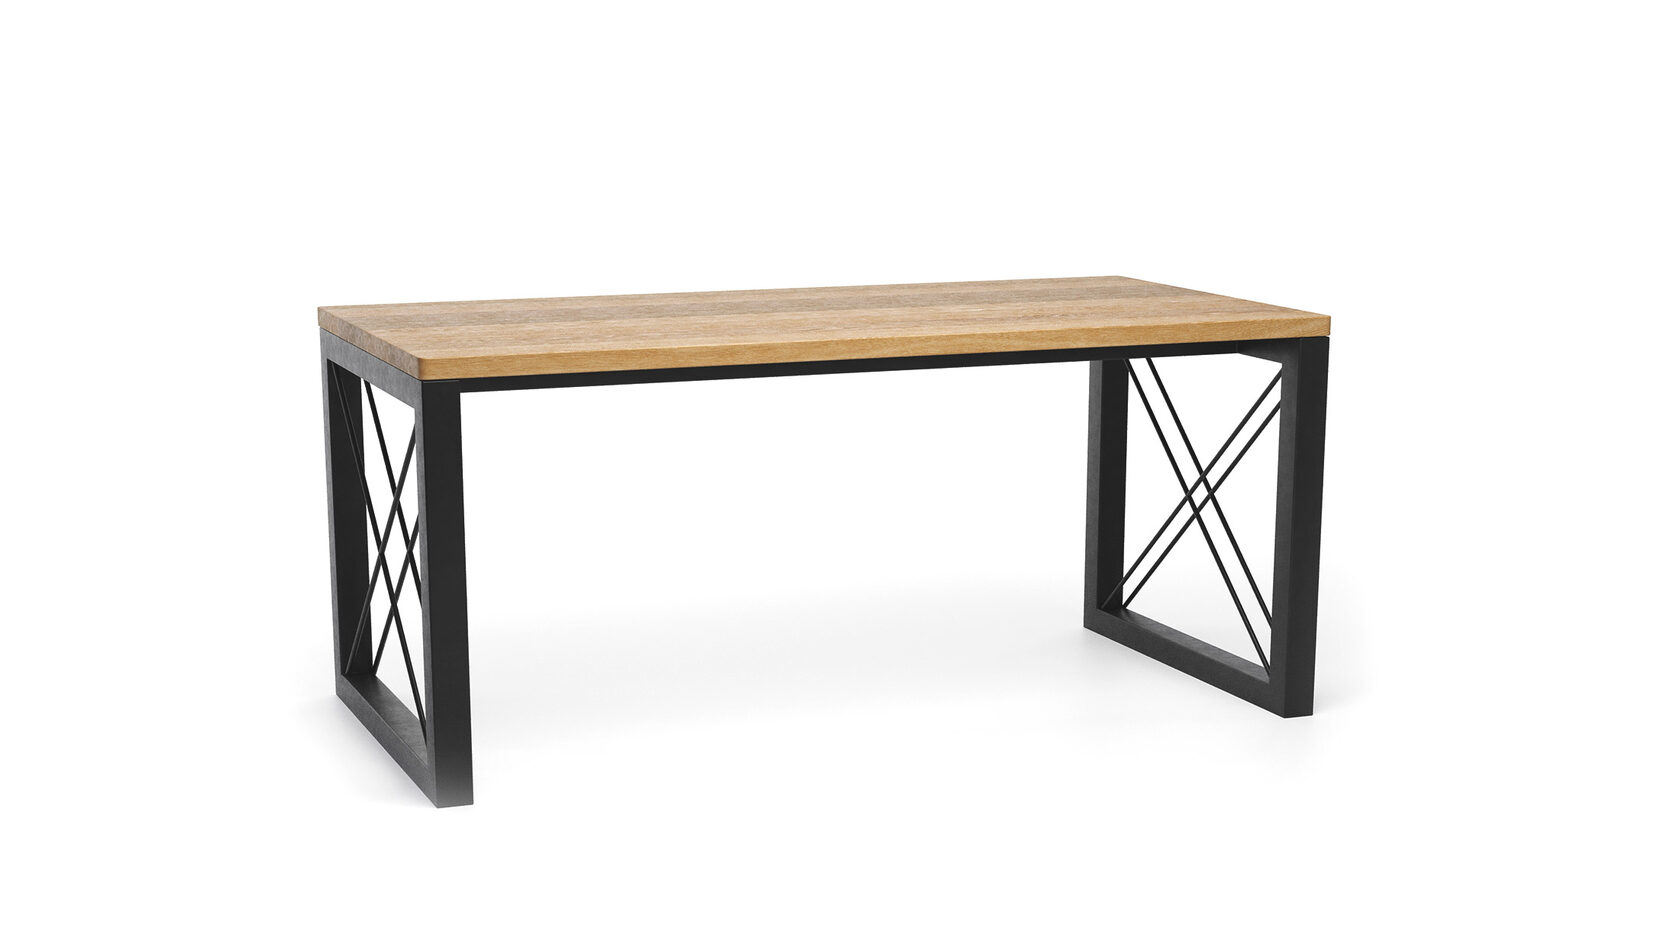 Современный стол Онгерман в стиле лофт ▪ модель loftab014 ▪ столешница из массива дерева ▪ вид сверху